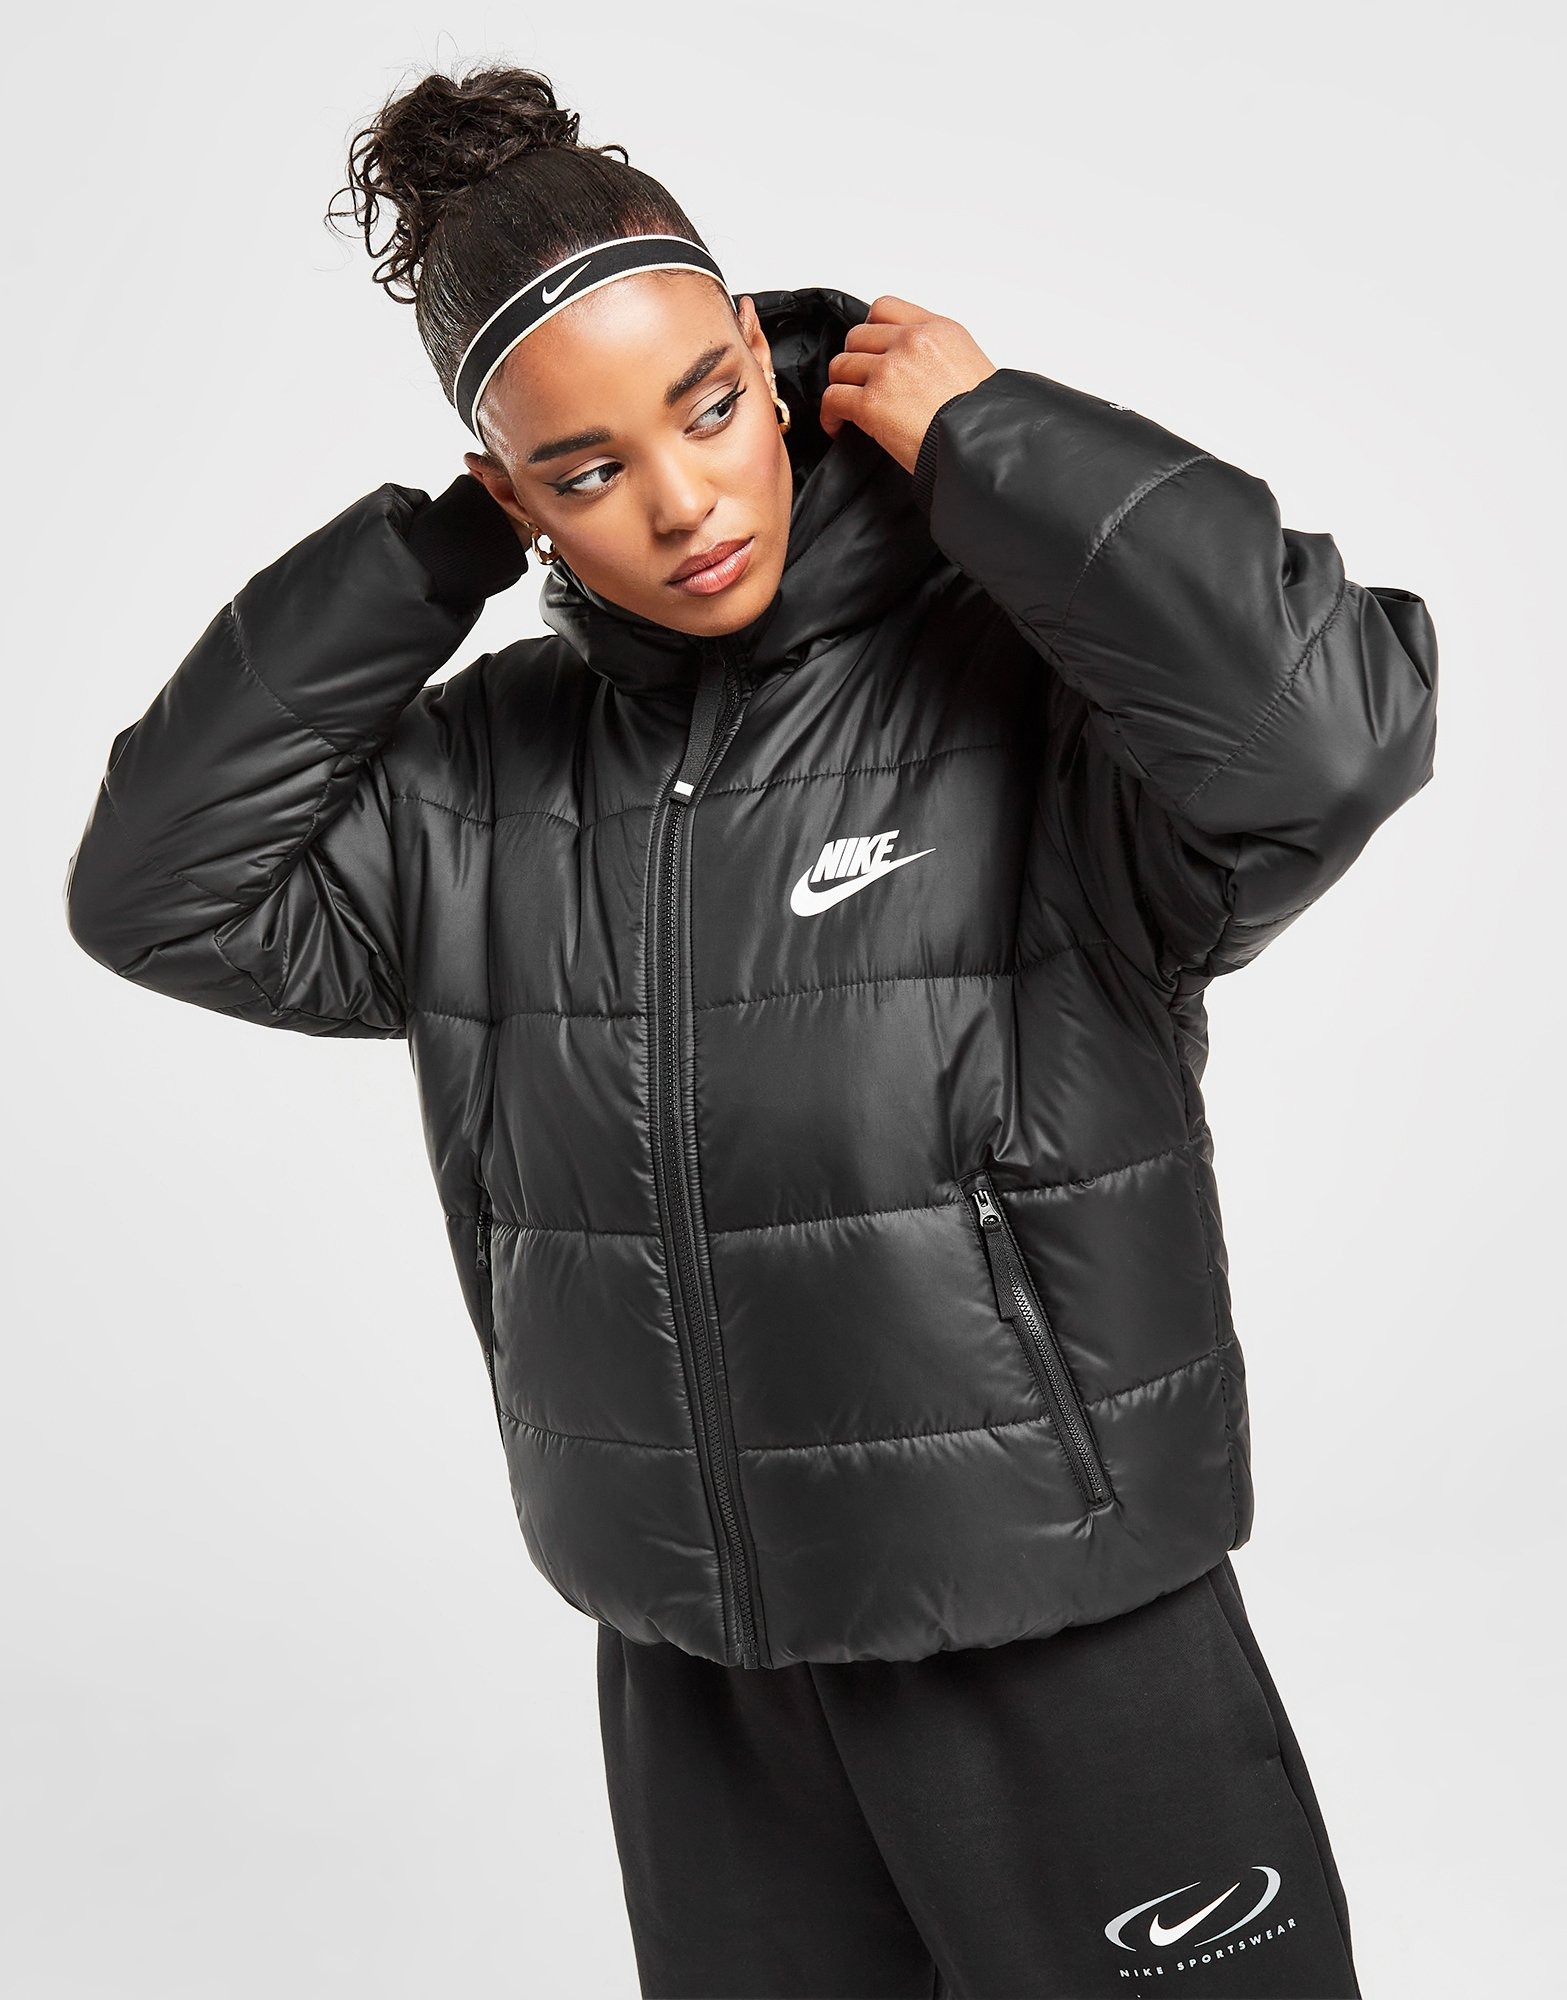 Humilde De confianza cuestionario Compra Nike chaqueta Padded en Negro